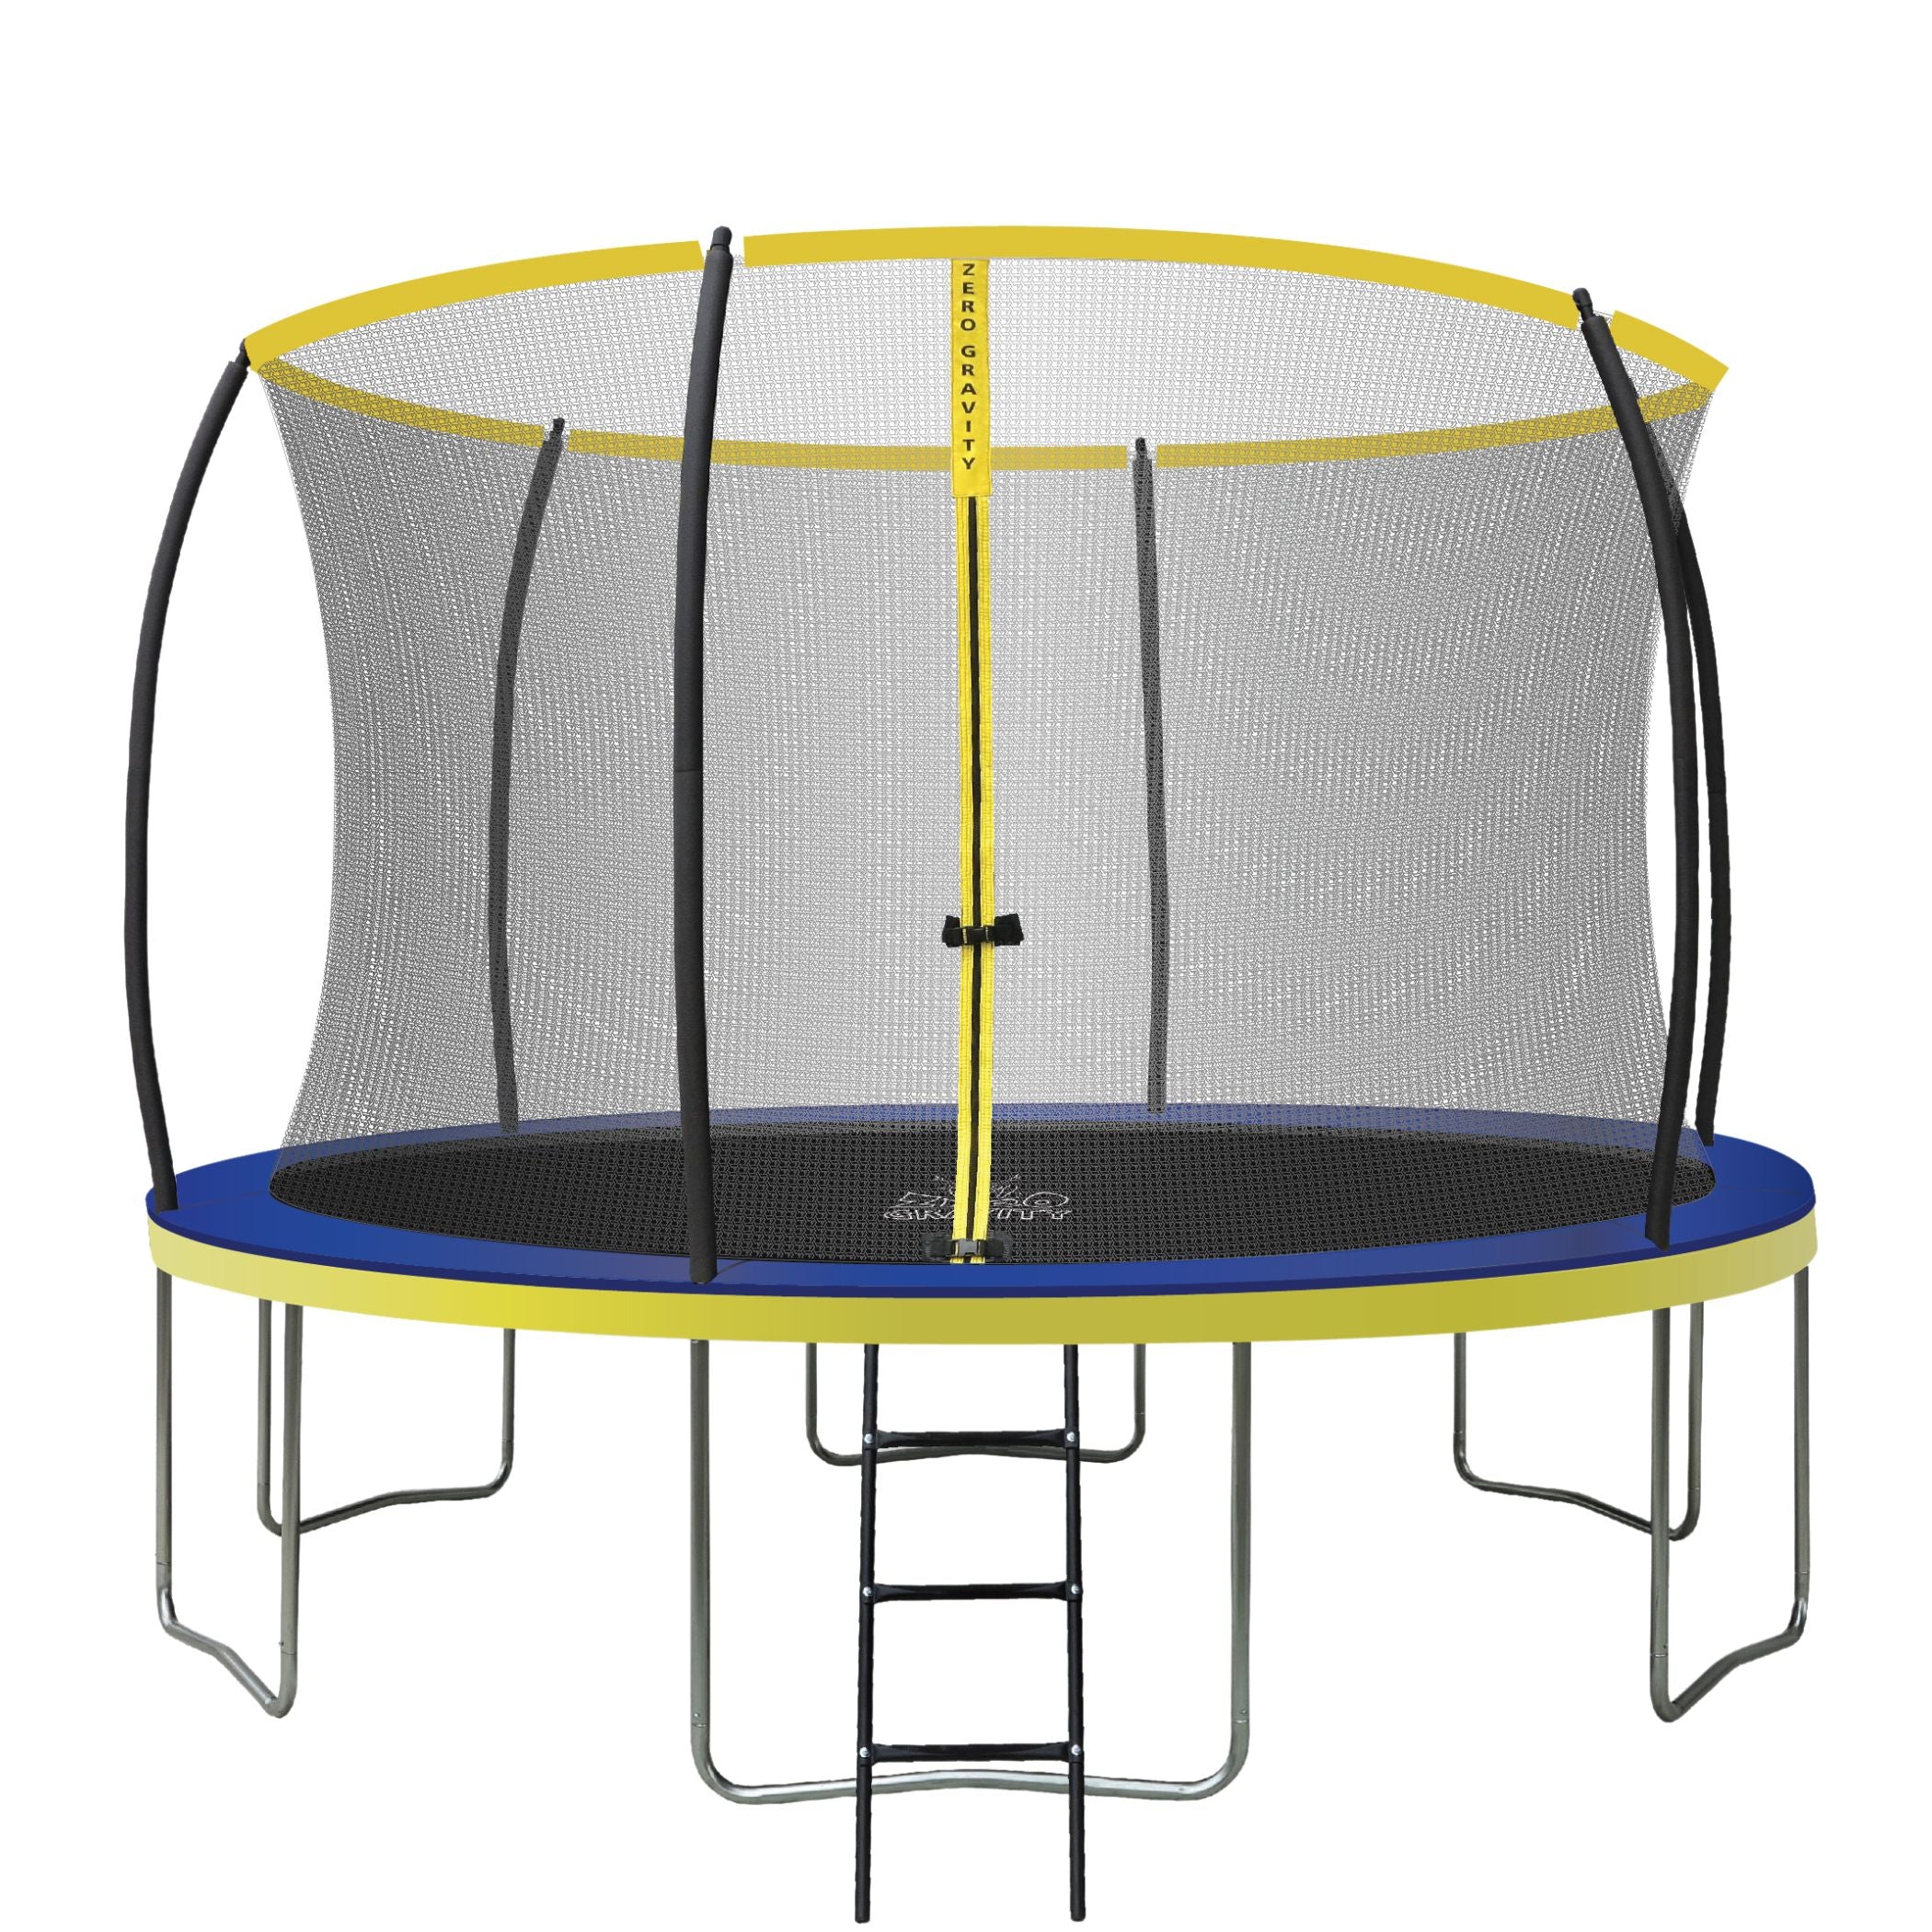 Trampolin (blau-gelb) Ø366cm inkl. Leiter - Nutzer bis 150kg - Ideal für bis zu 3 Kinder